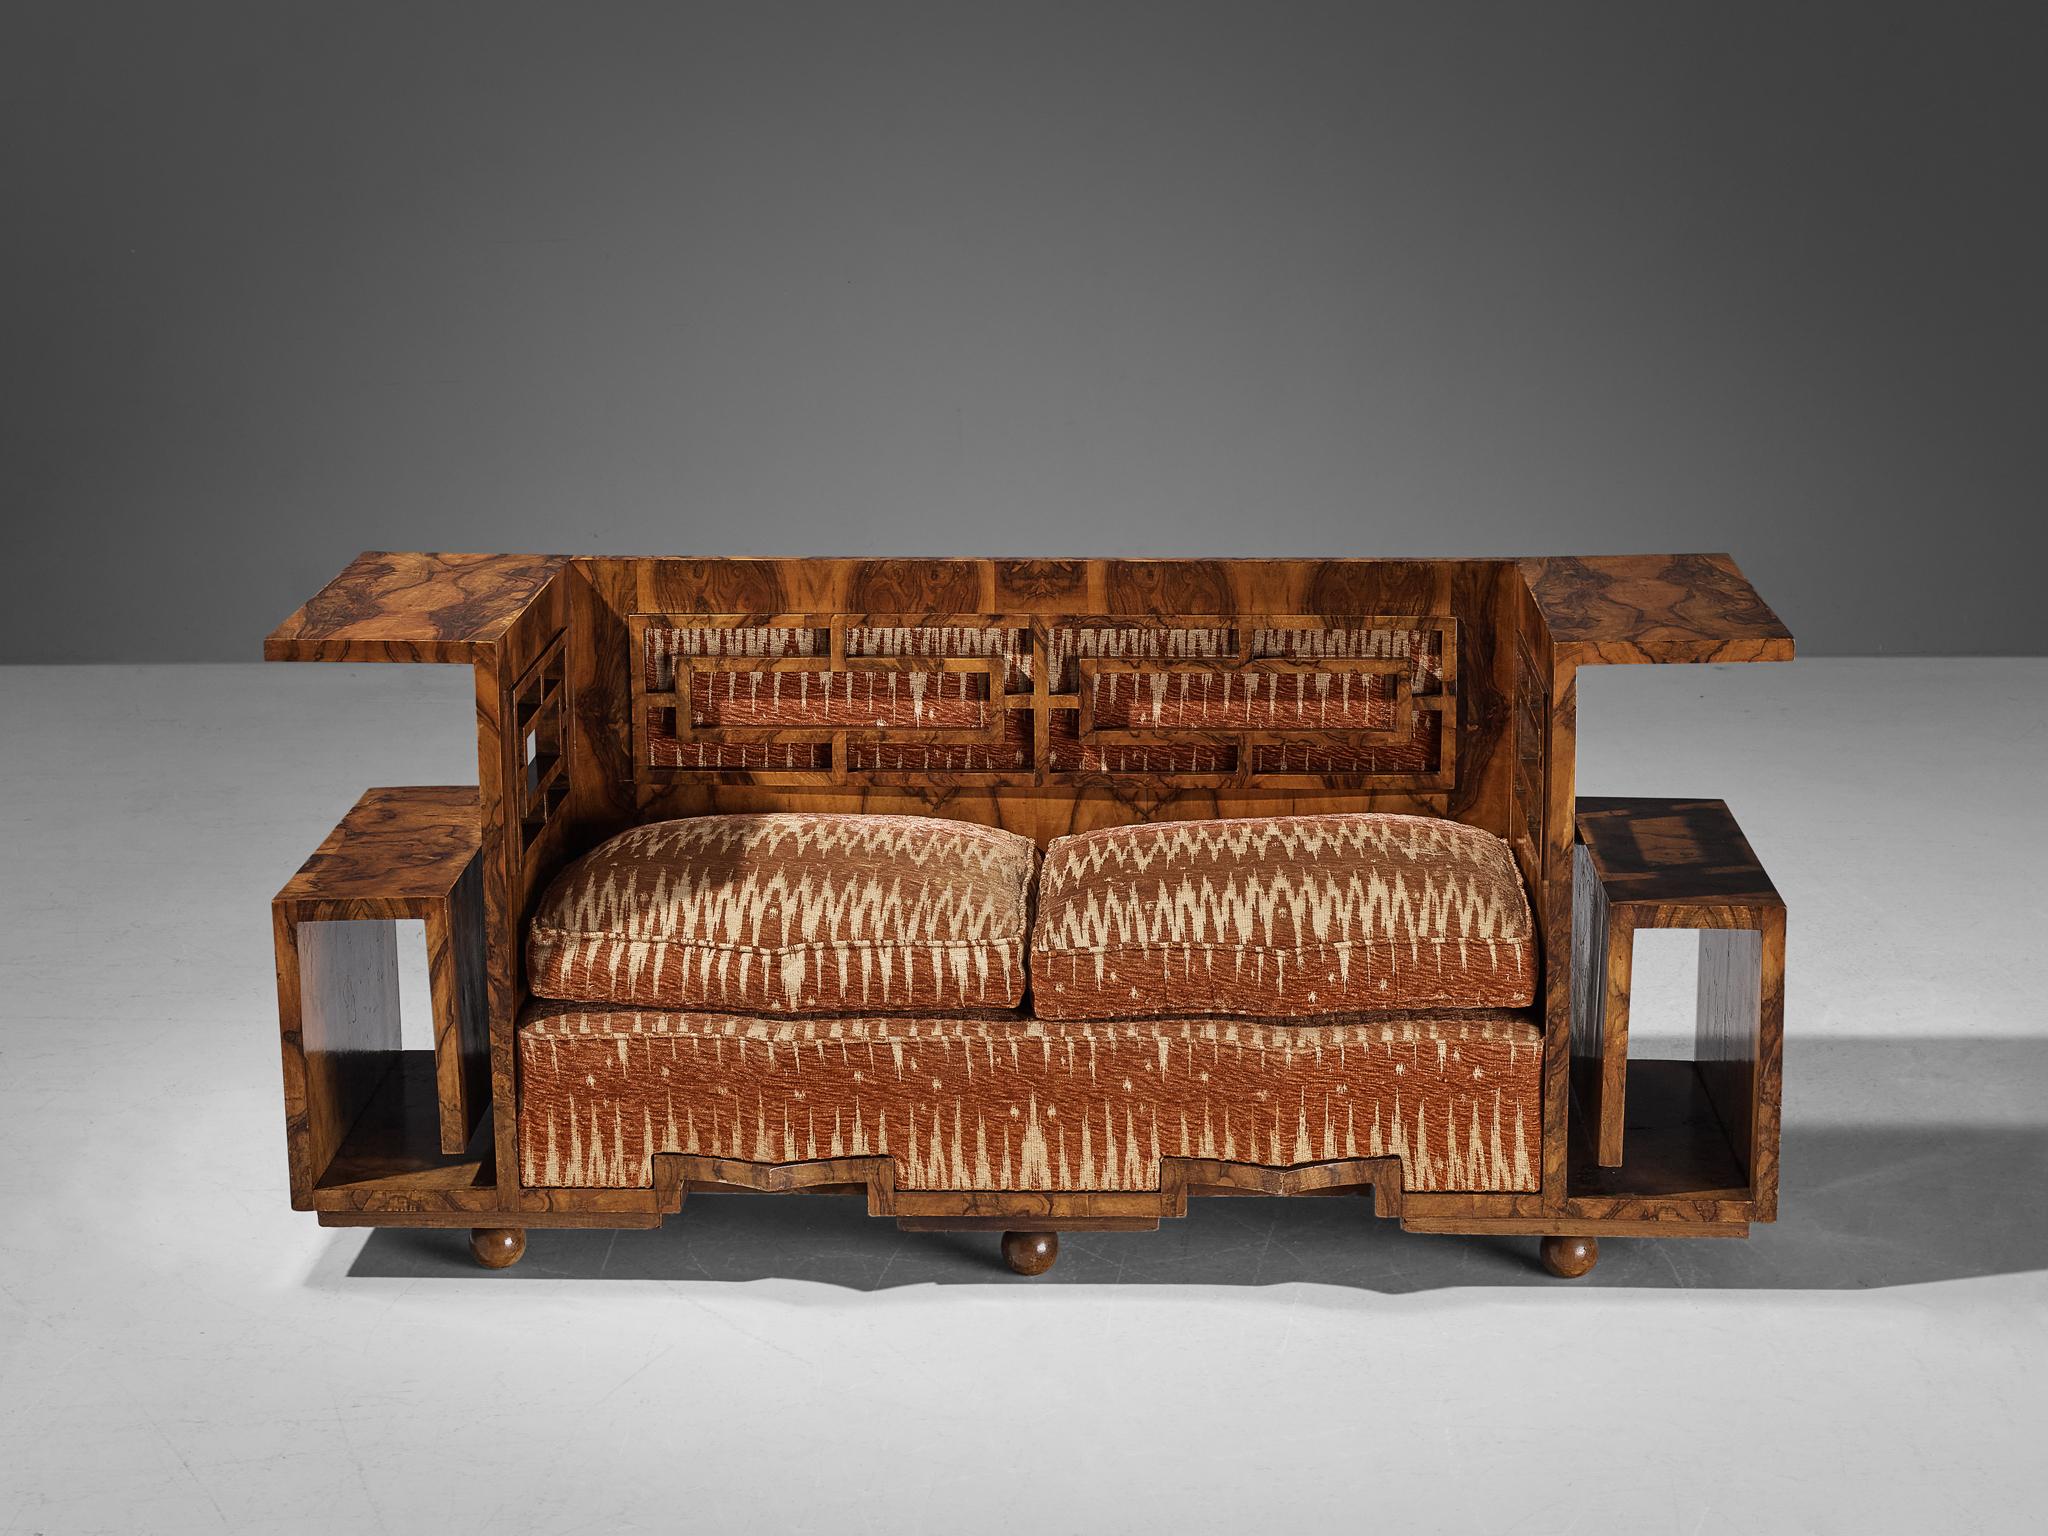 Sofa, Nussbaumwurzel, Samt, Stoff, Italien, 1930er Jahre.

Dieses einzigartige Sofa ist nach den Prinzipien des Art déco gestaltet, die in den 1930er Jahren in Mode waren. Während das Erscheinungsbild der Möbel insgesamt zweifellos modern war, waren